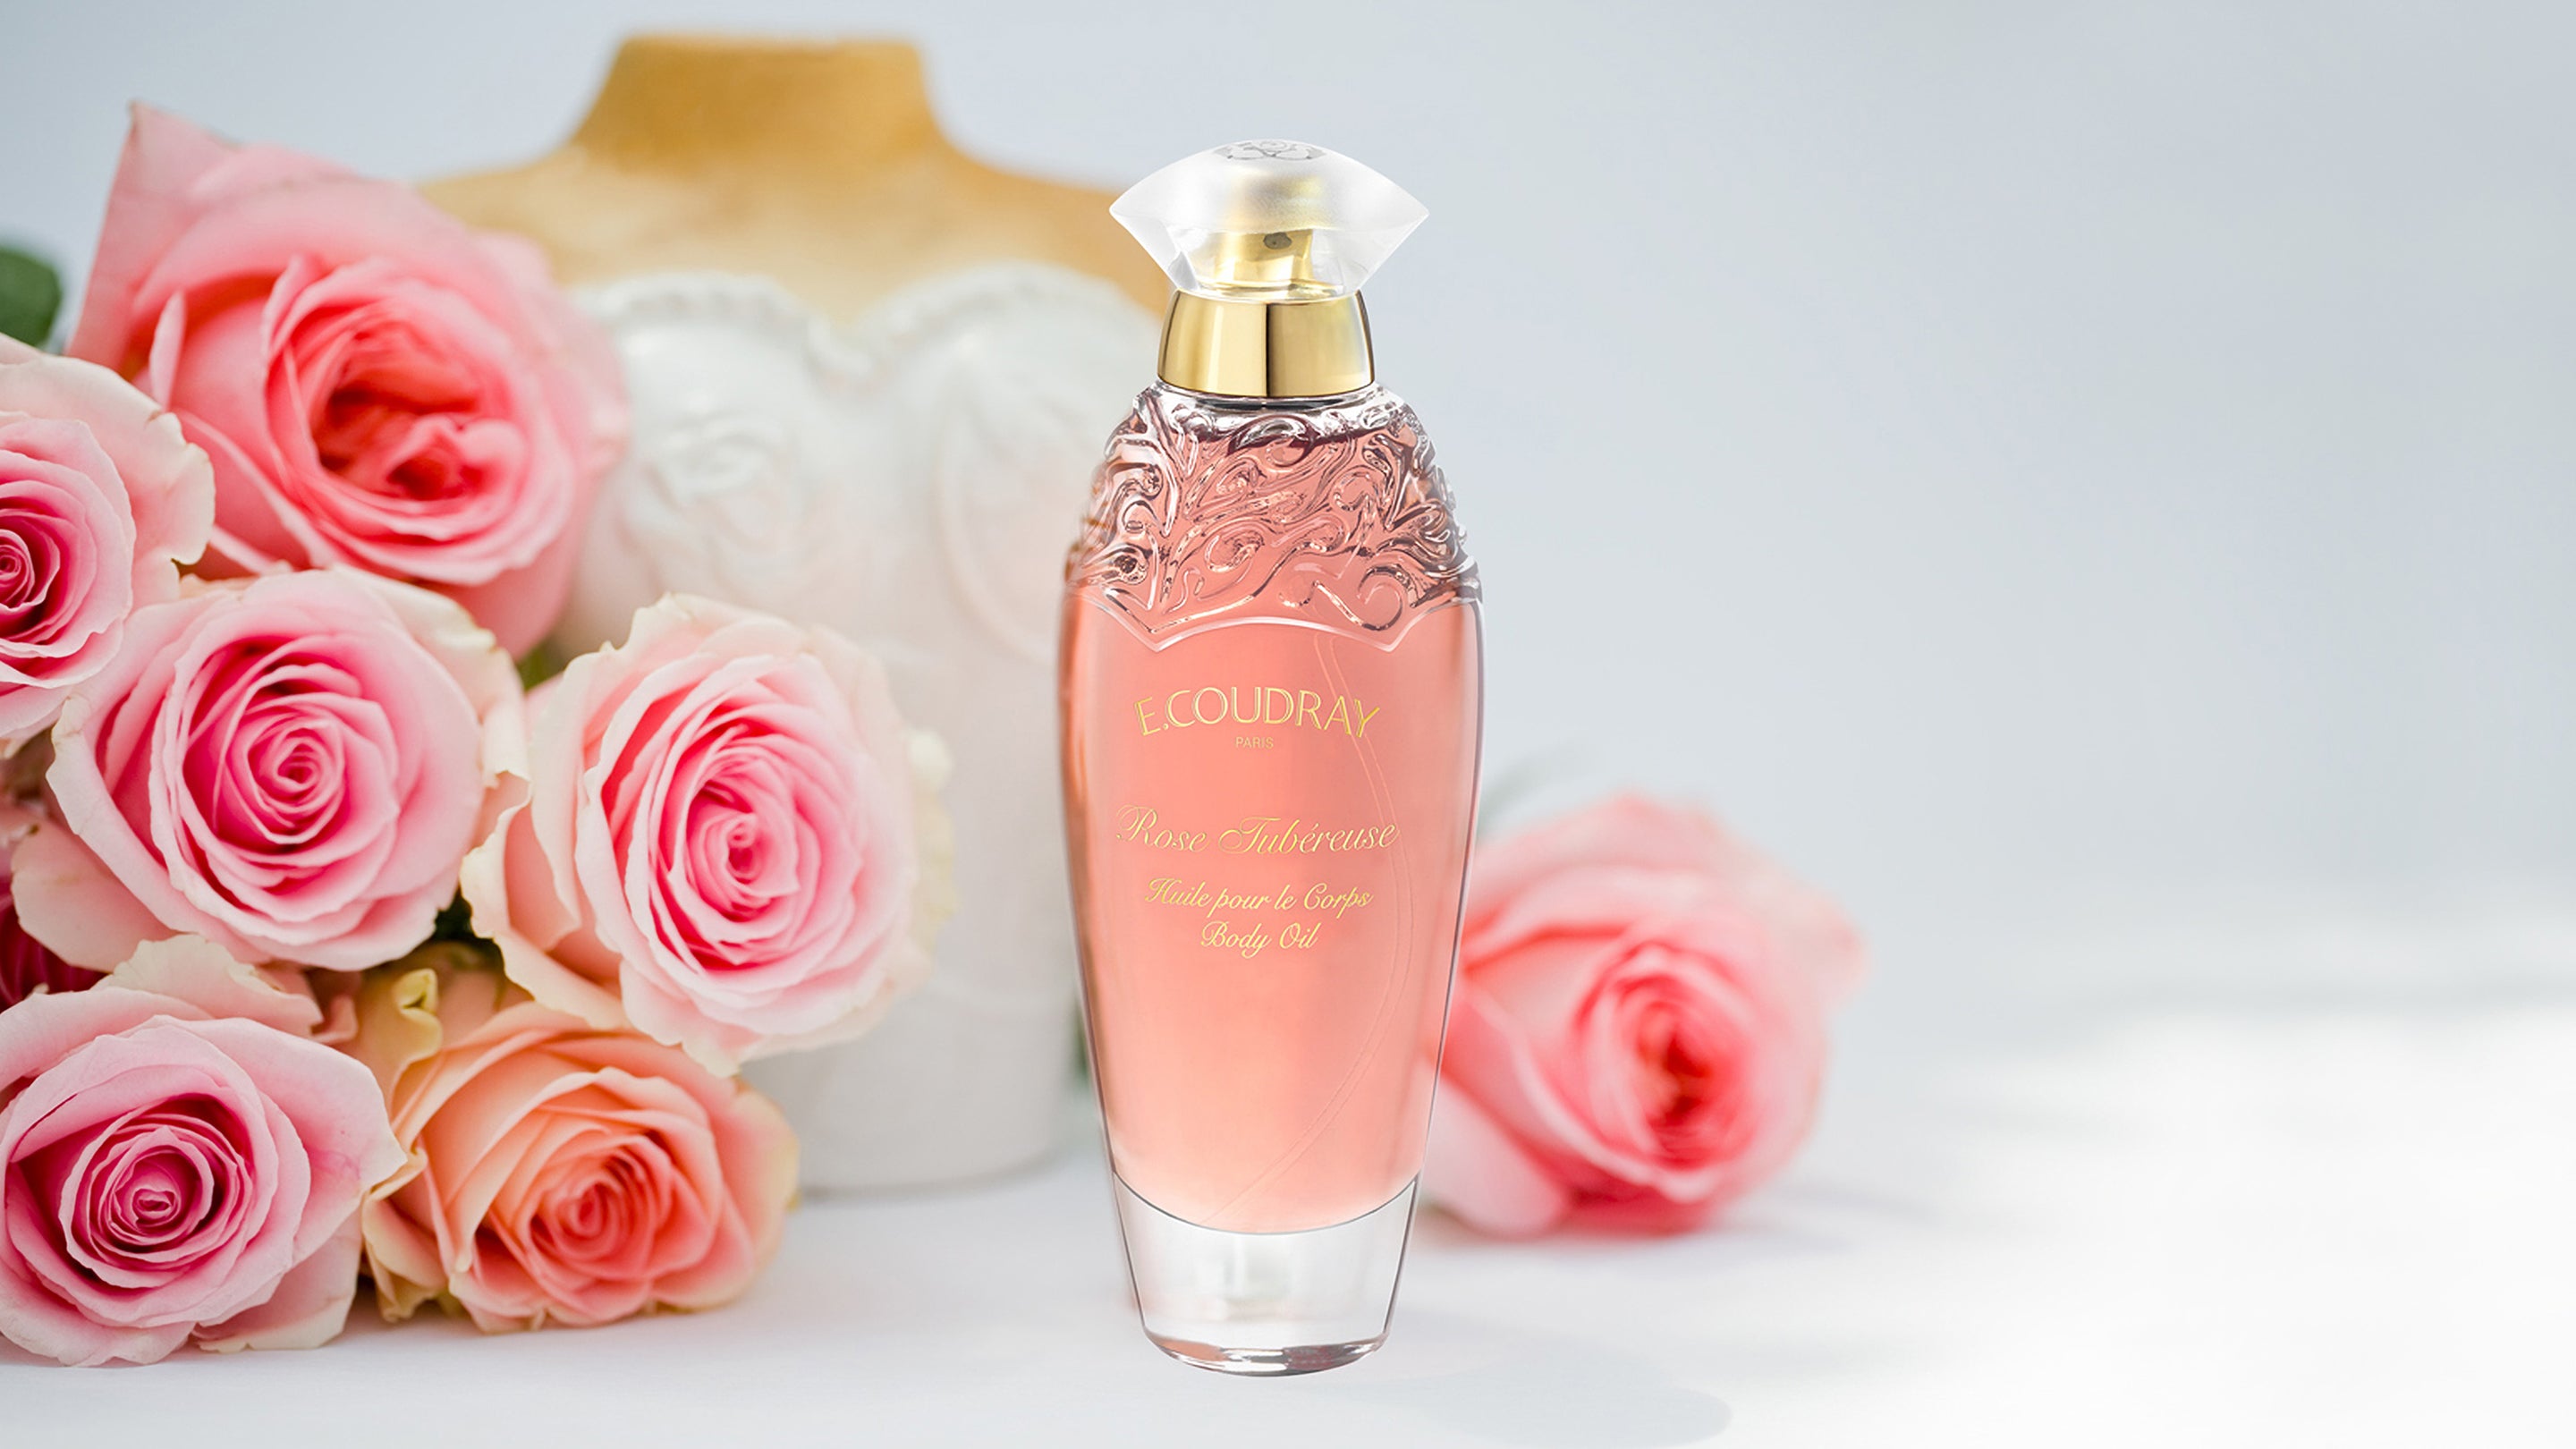 E.COUDRAY Huile Parfumée pour Corps Vanille/Coco : : Beauté et  Parfum